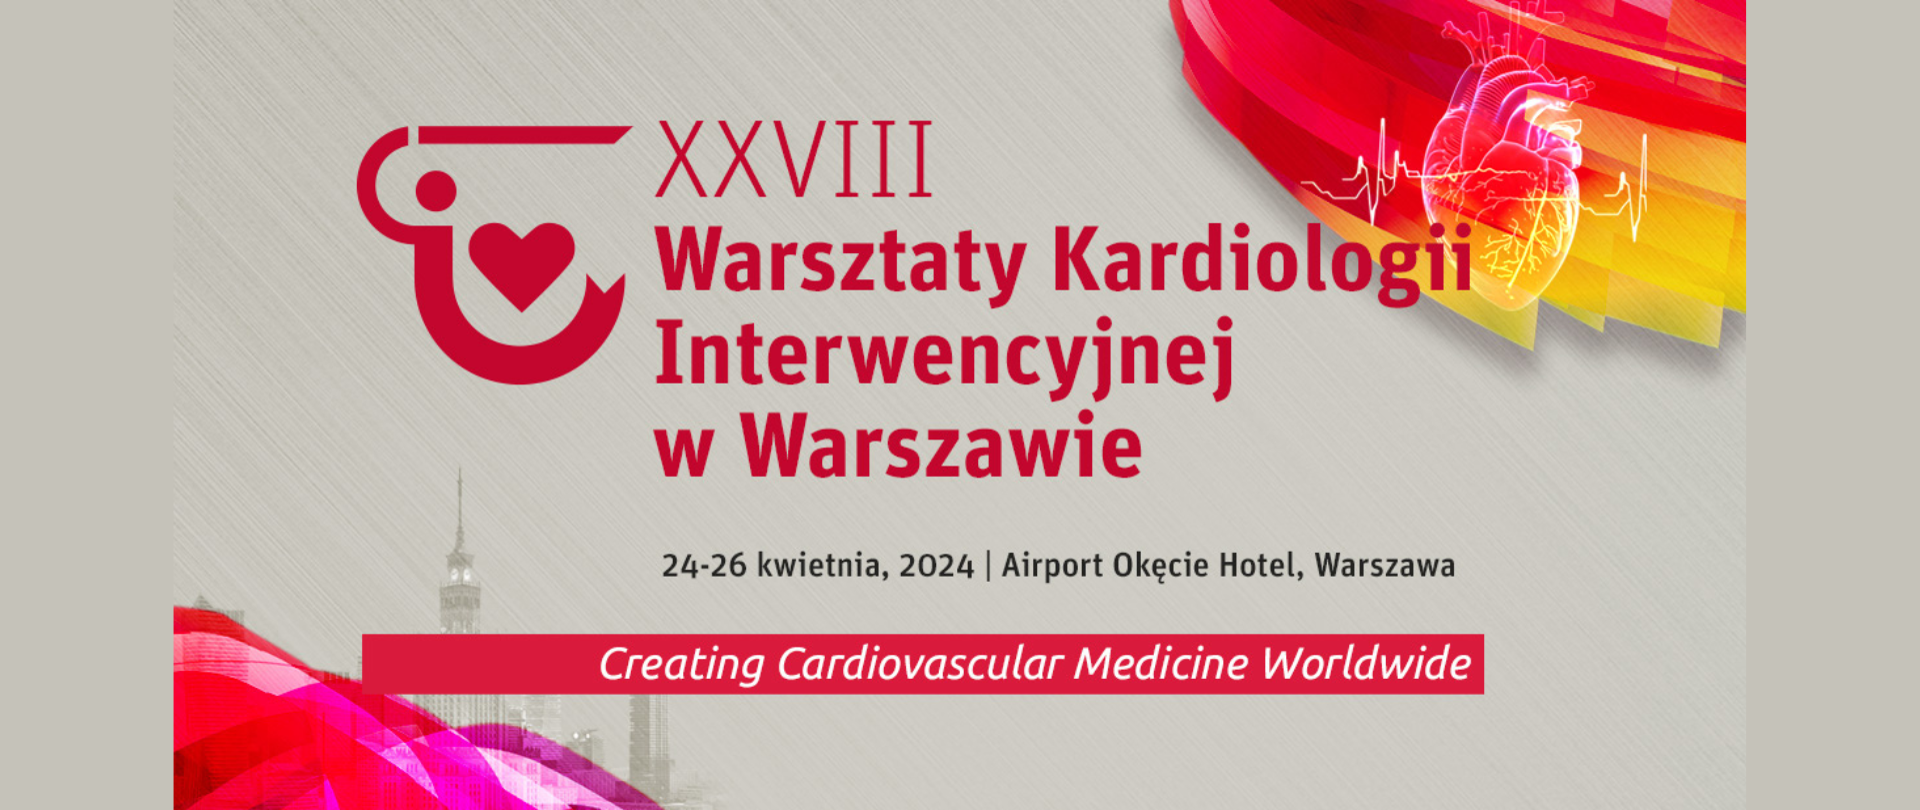 Baner Warsztaty Kardiologii Interwencyjnej w Warszawie. 24-26 kwietnia 2024, Aiport Okęcie Hotel, Warszawa